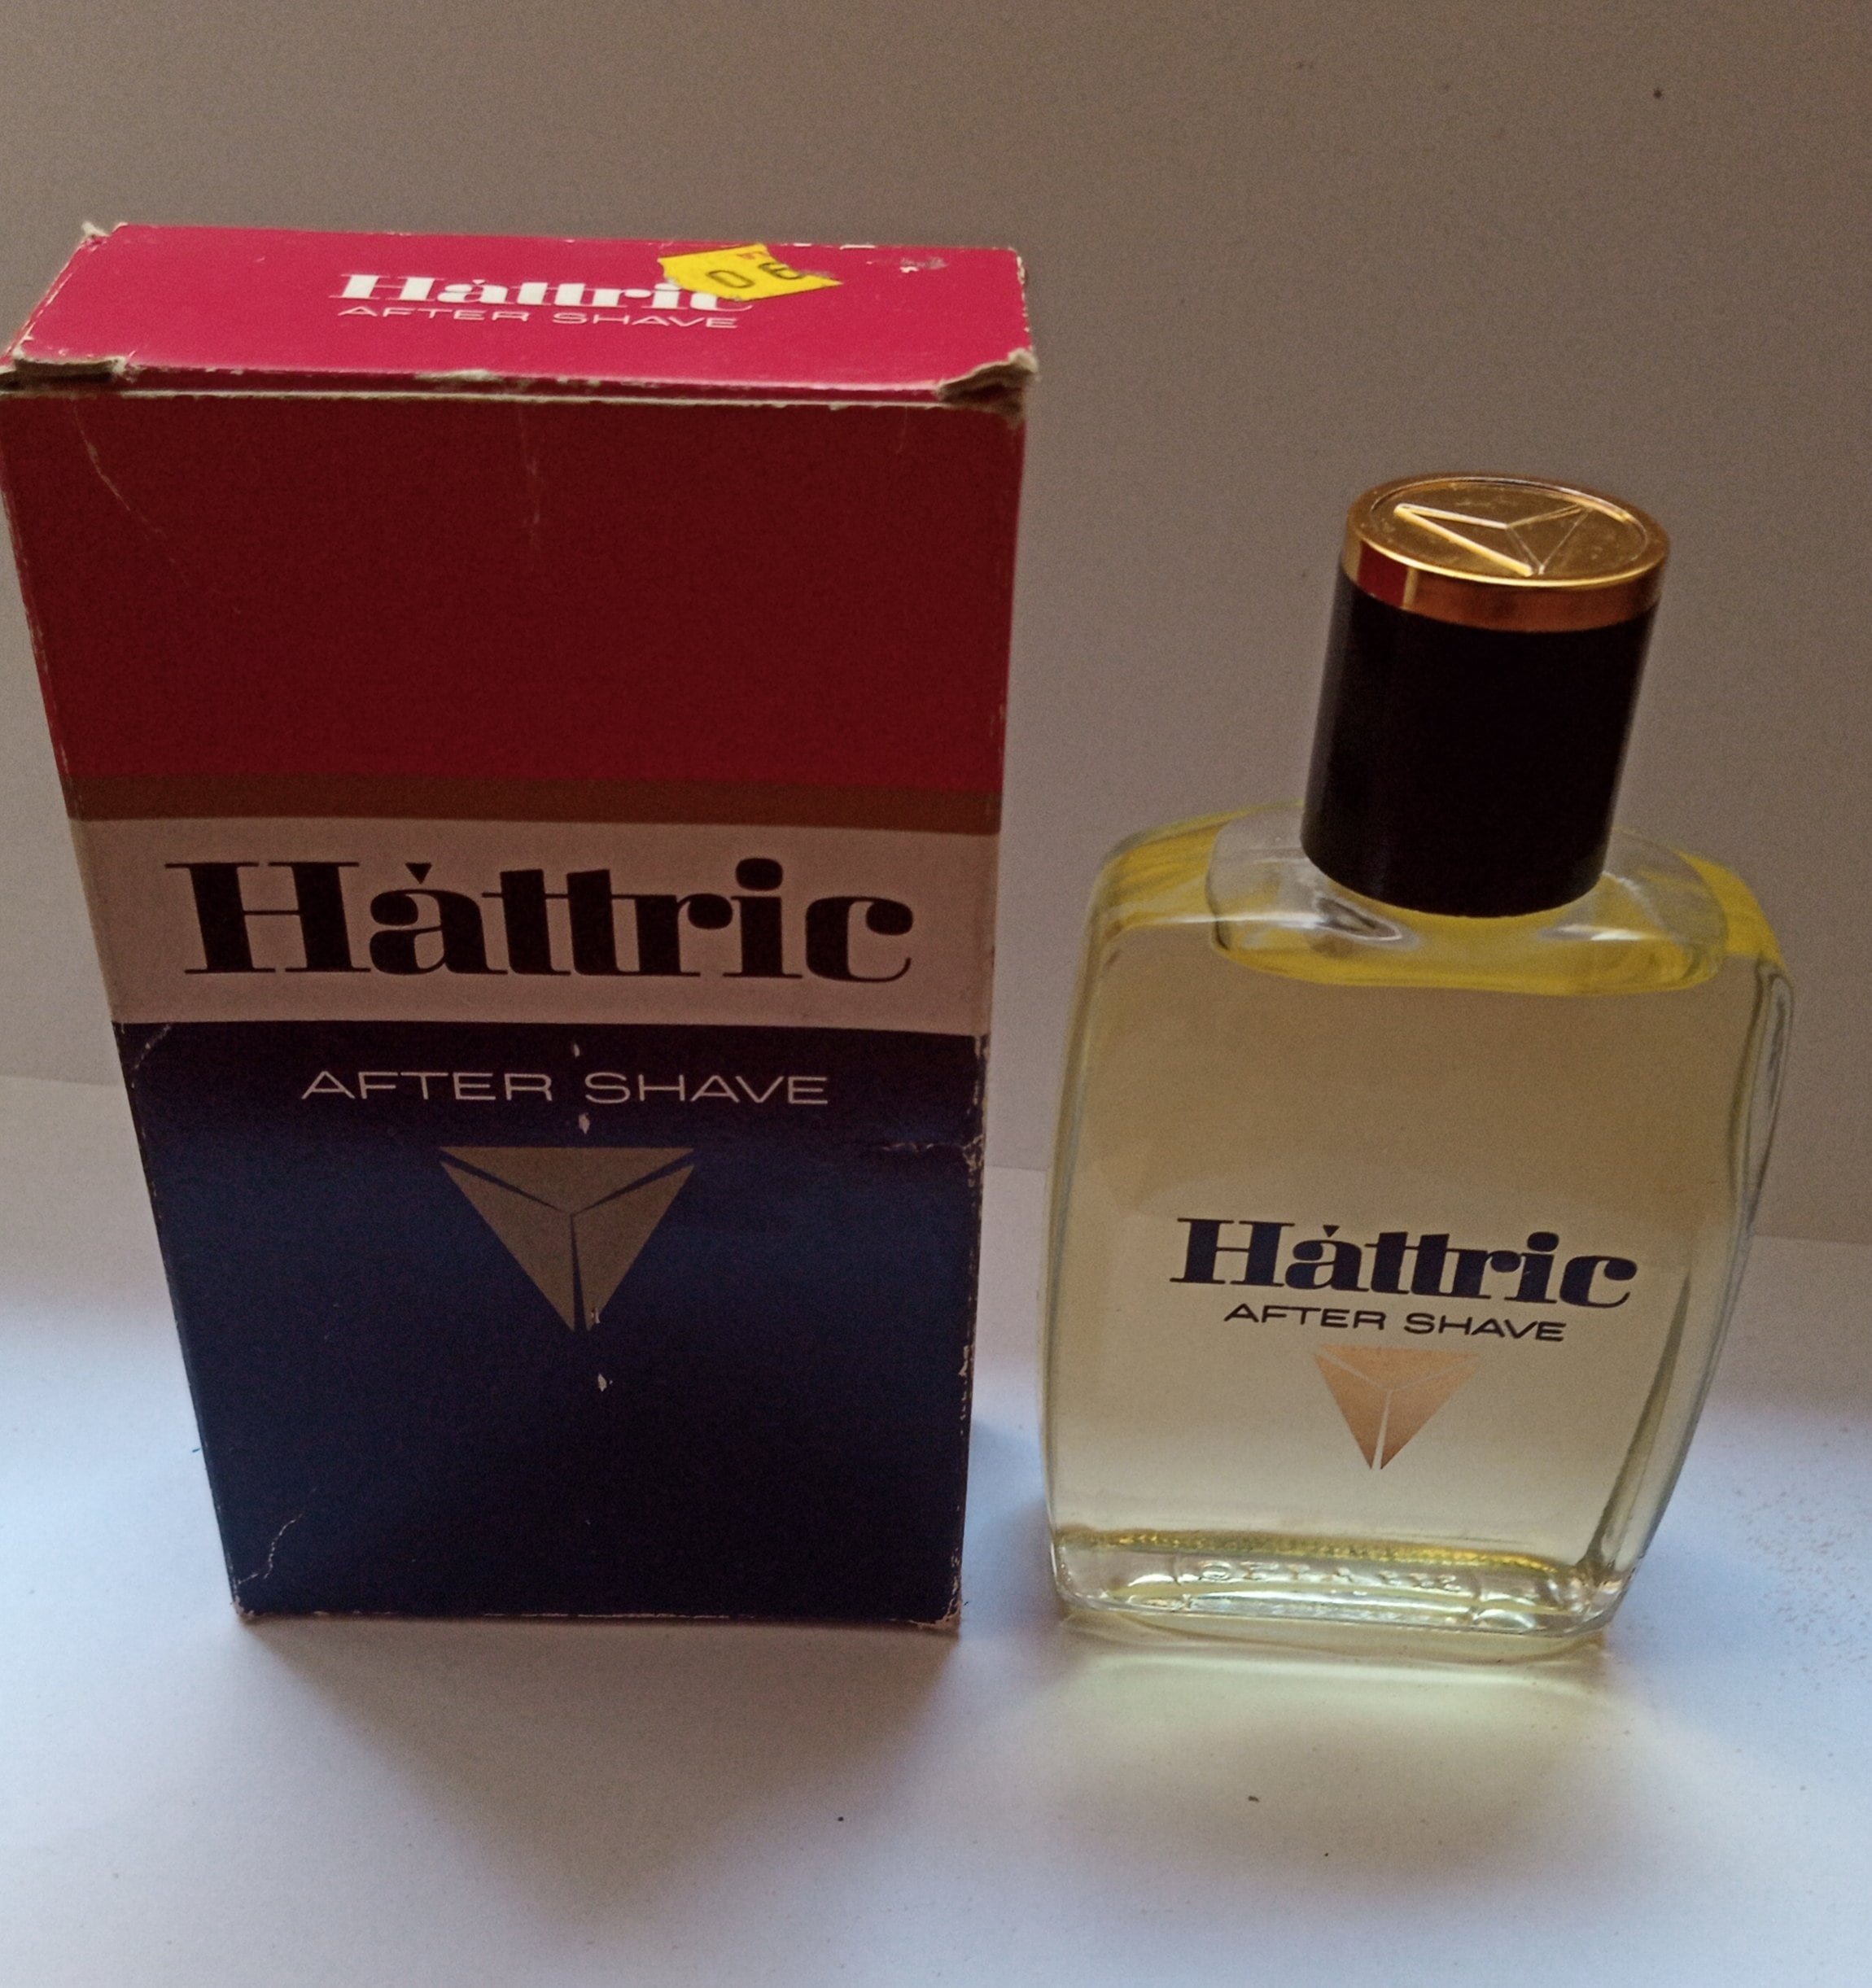 Get the best deals on Vintage Aftershave Fragrances for Men when